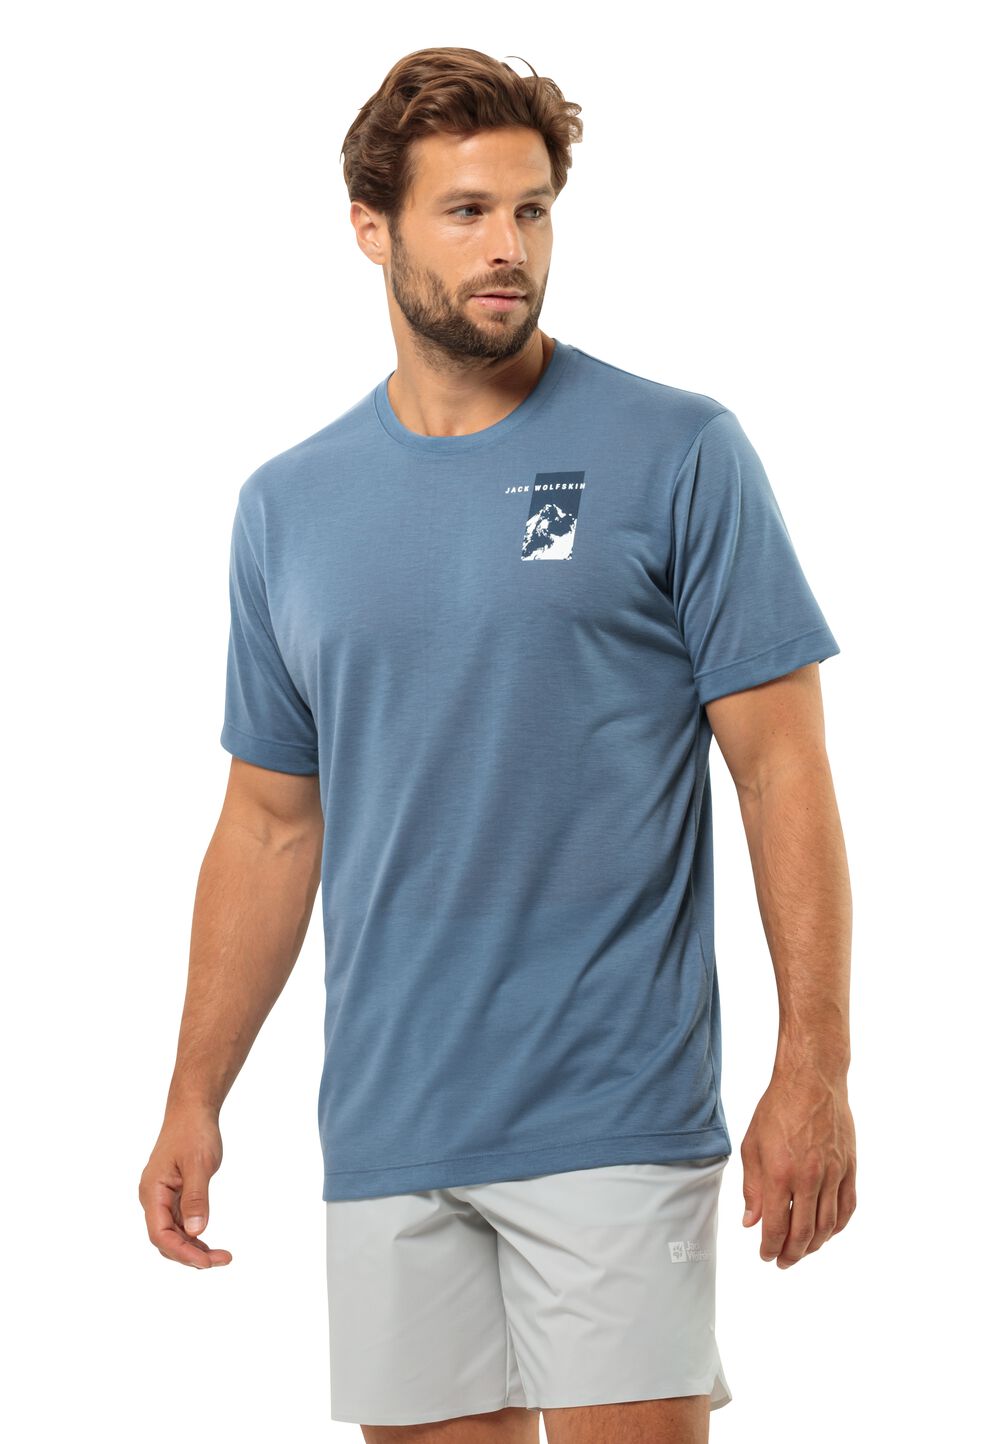 Jack Wolfskin Vonnan S S Graphic T-Shirt Men Functioneel shirt Heren S elemental blue elemental blue